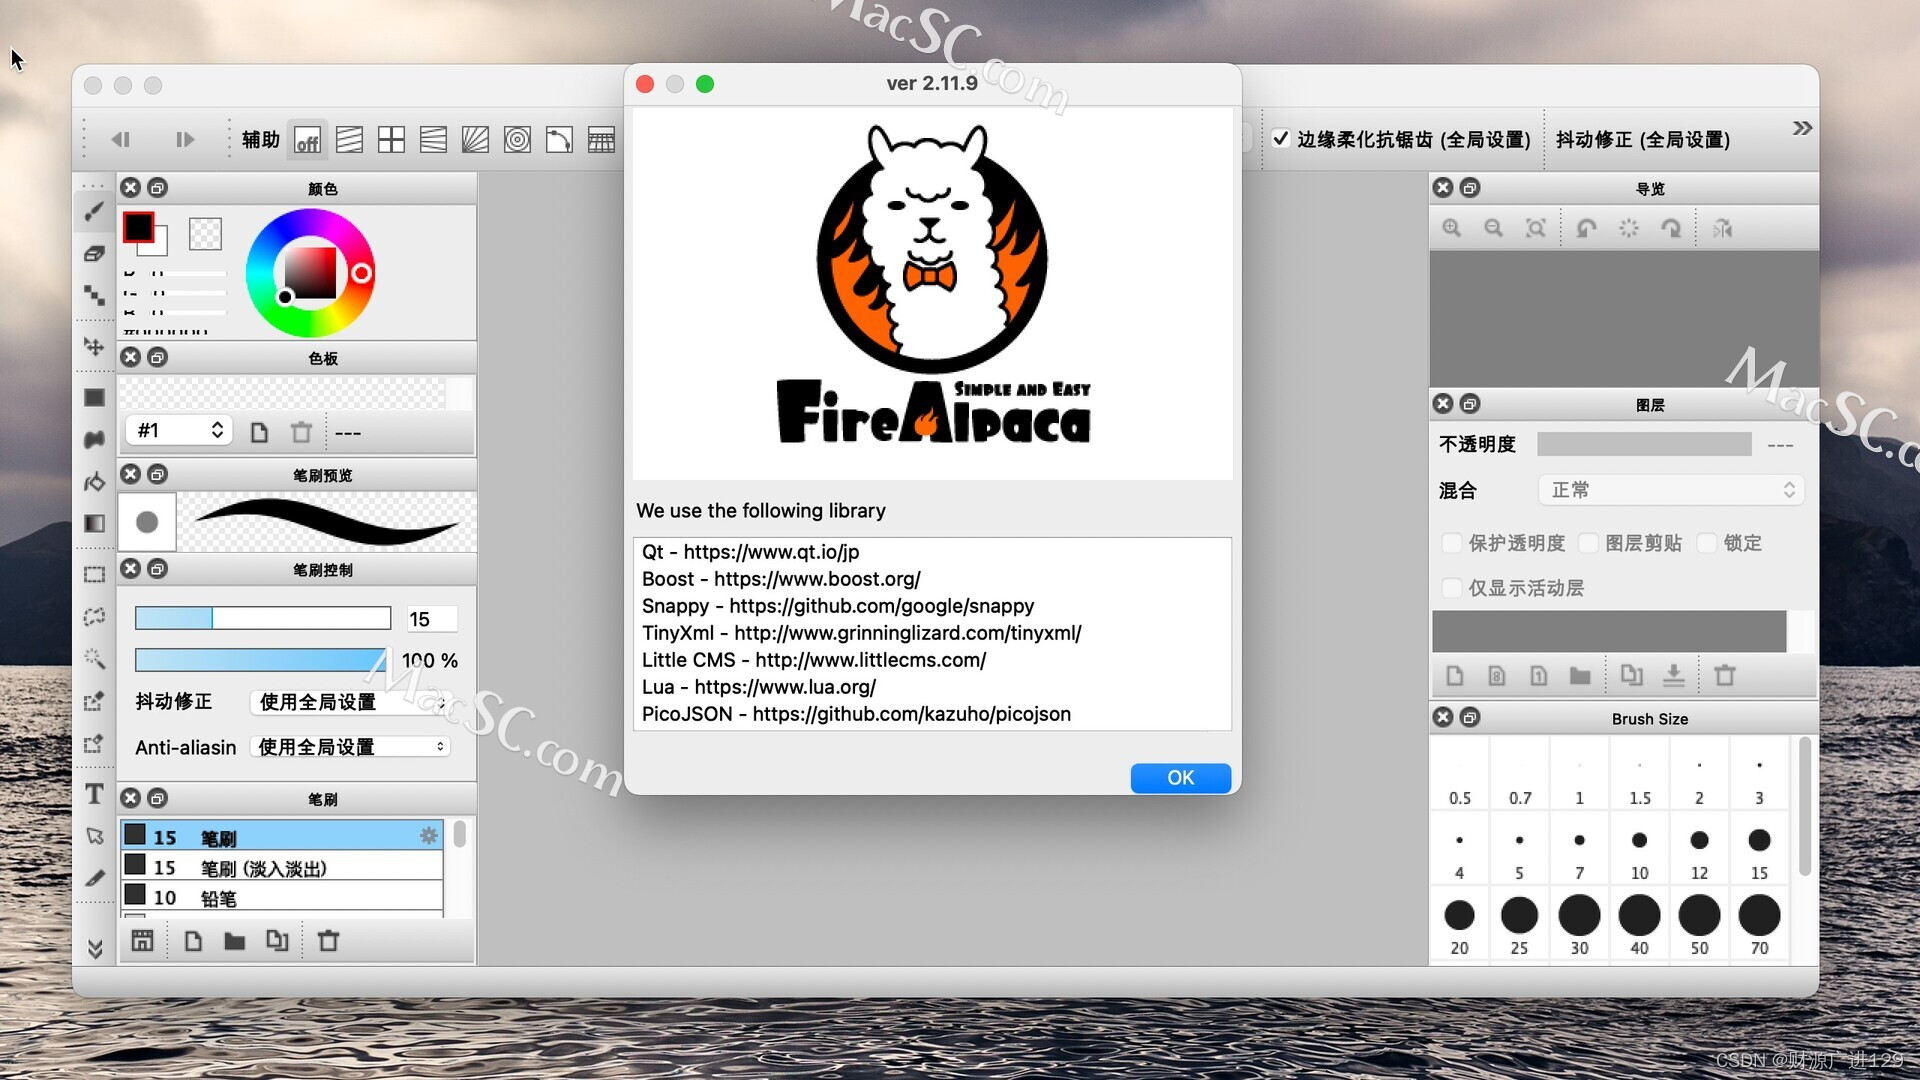 点燃创意，发掘绘图潜能——FireAlpaca for Mac专业绘图软件